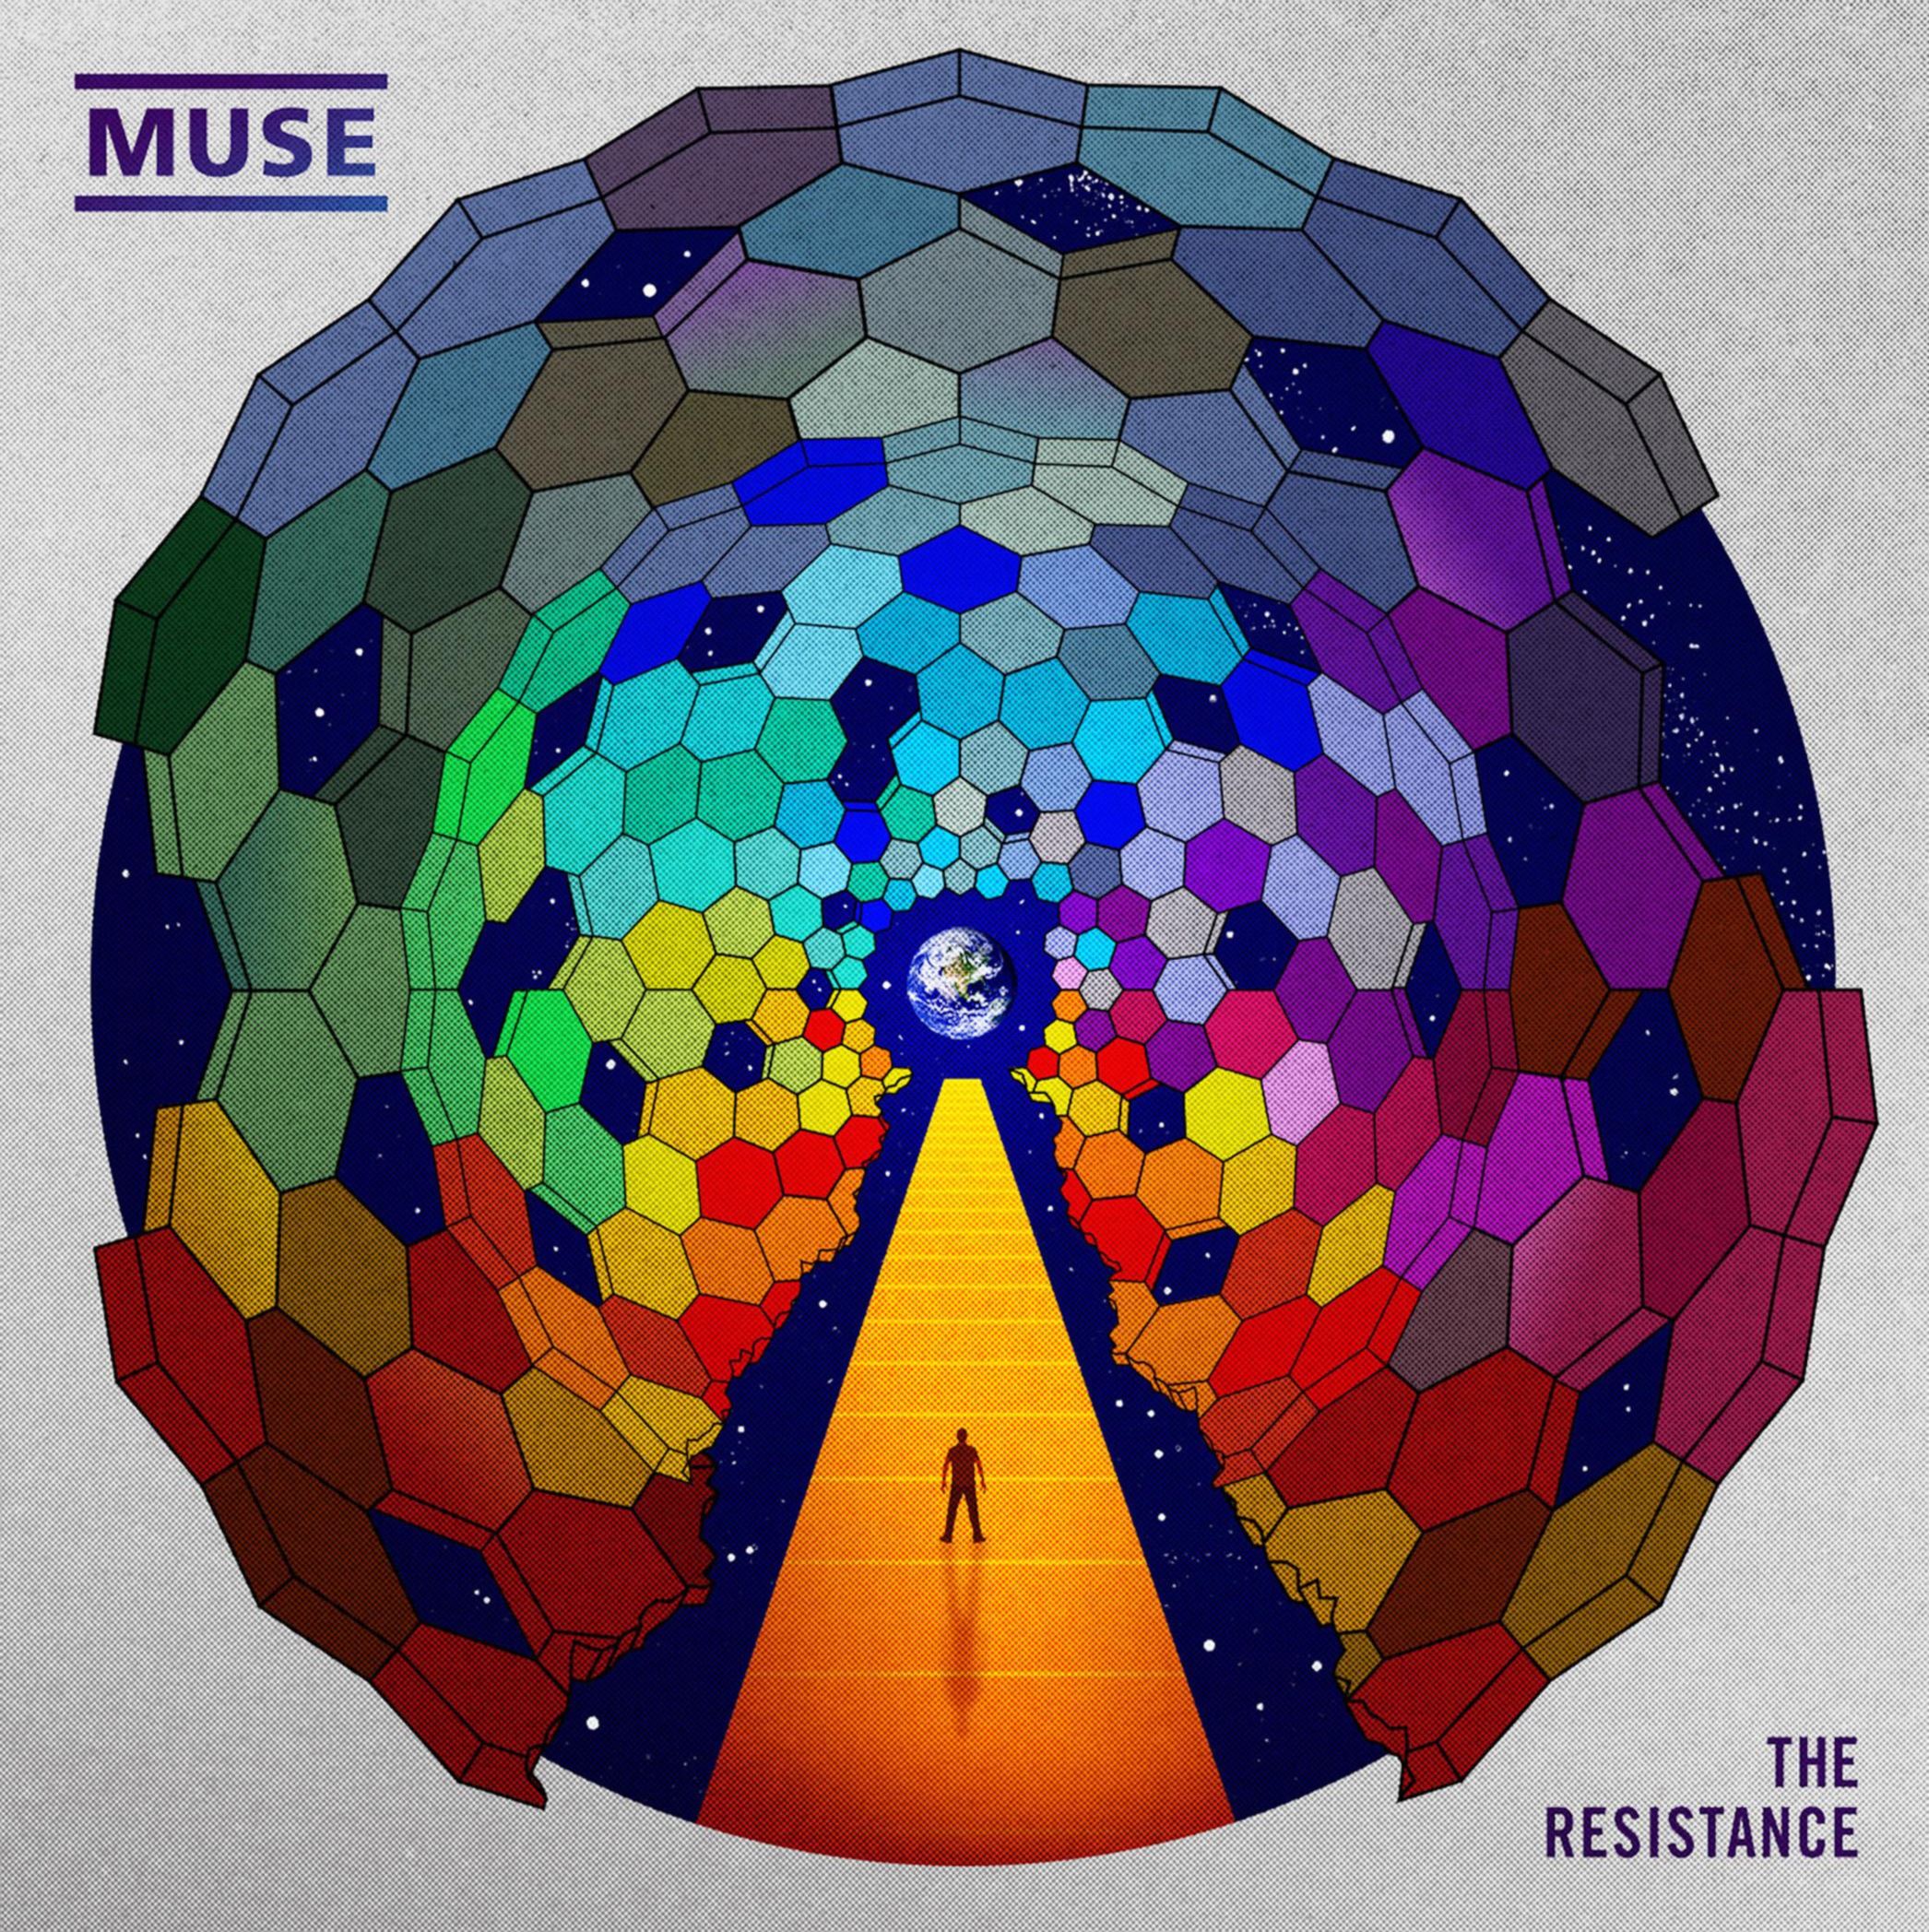 MUSE LP VINYLE RESISTANCE 5051865849728_resistance_-_cd